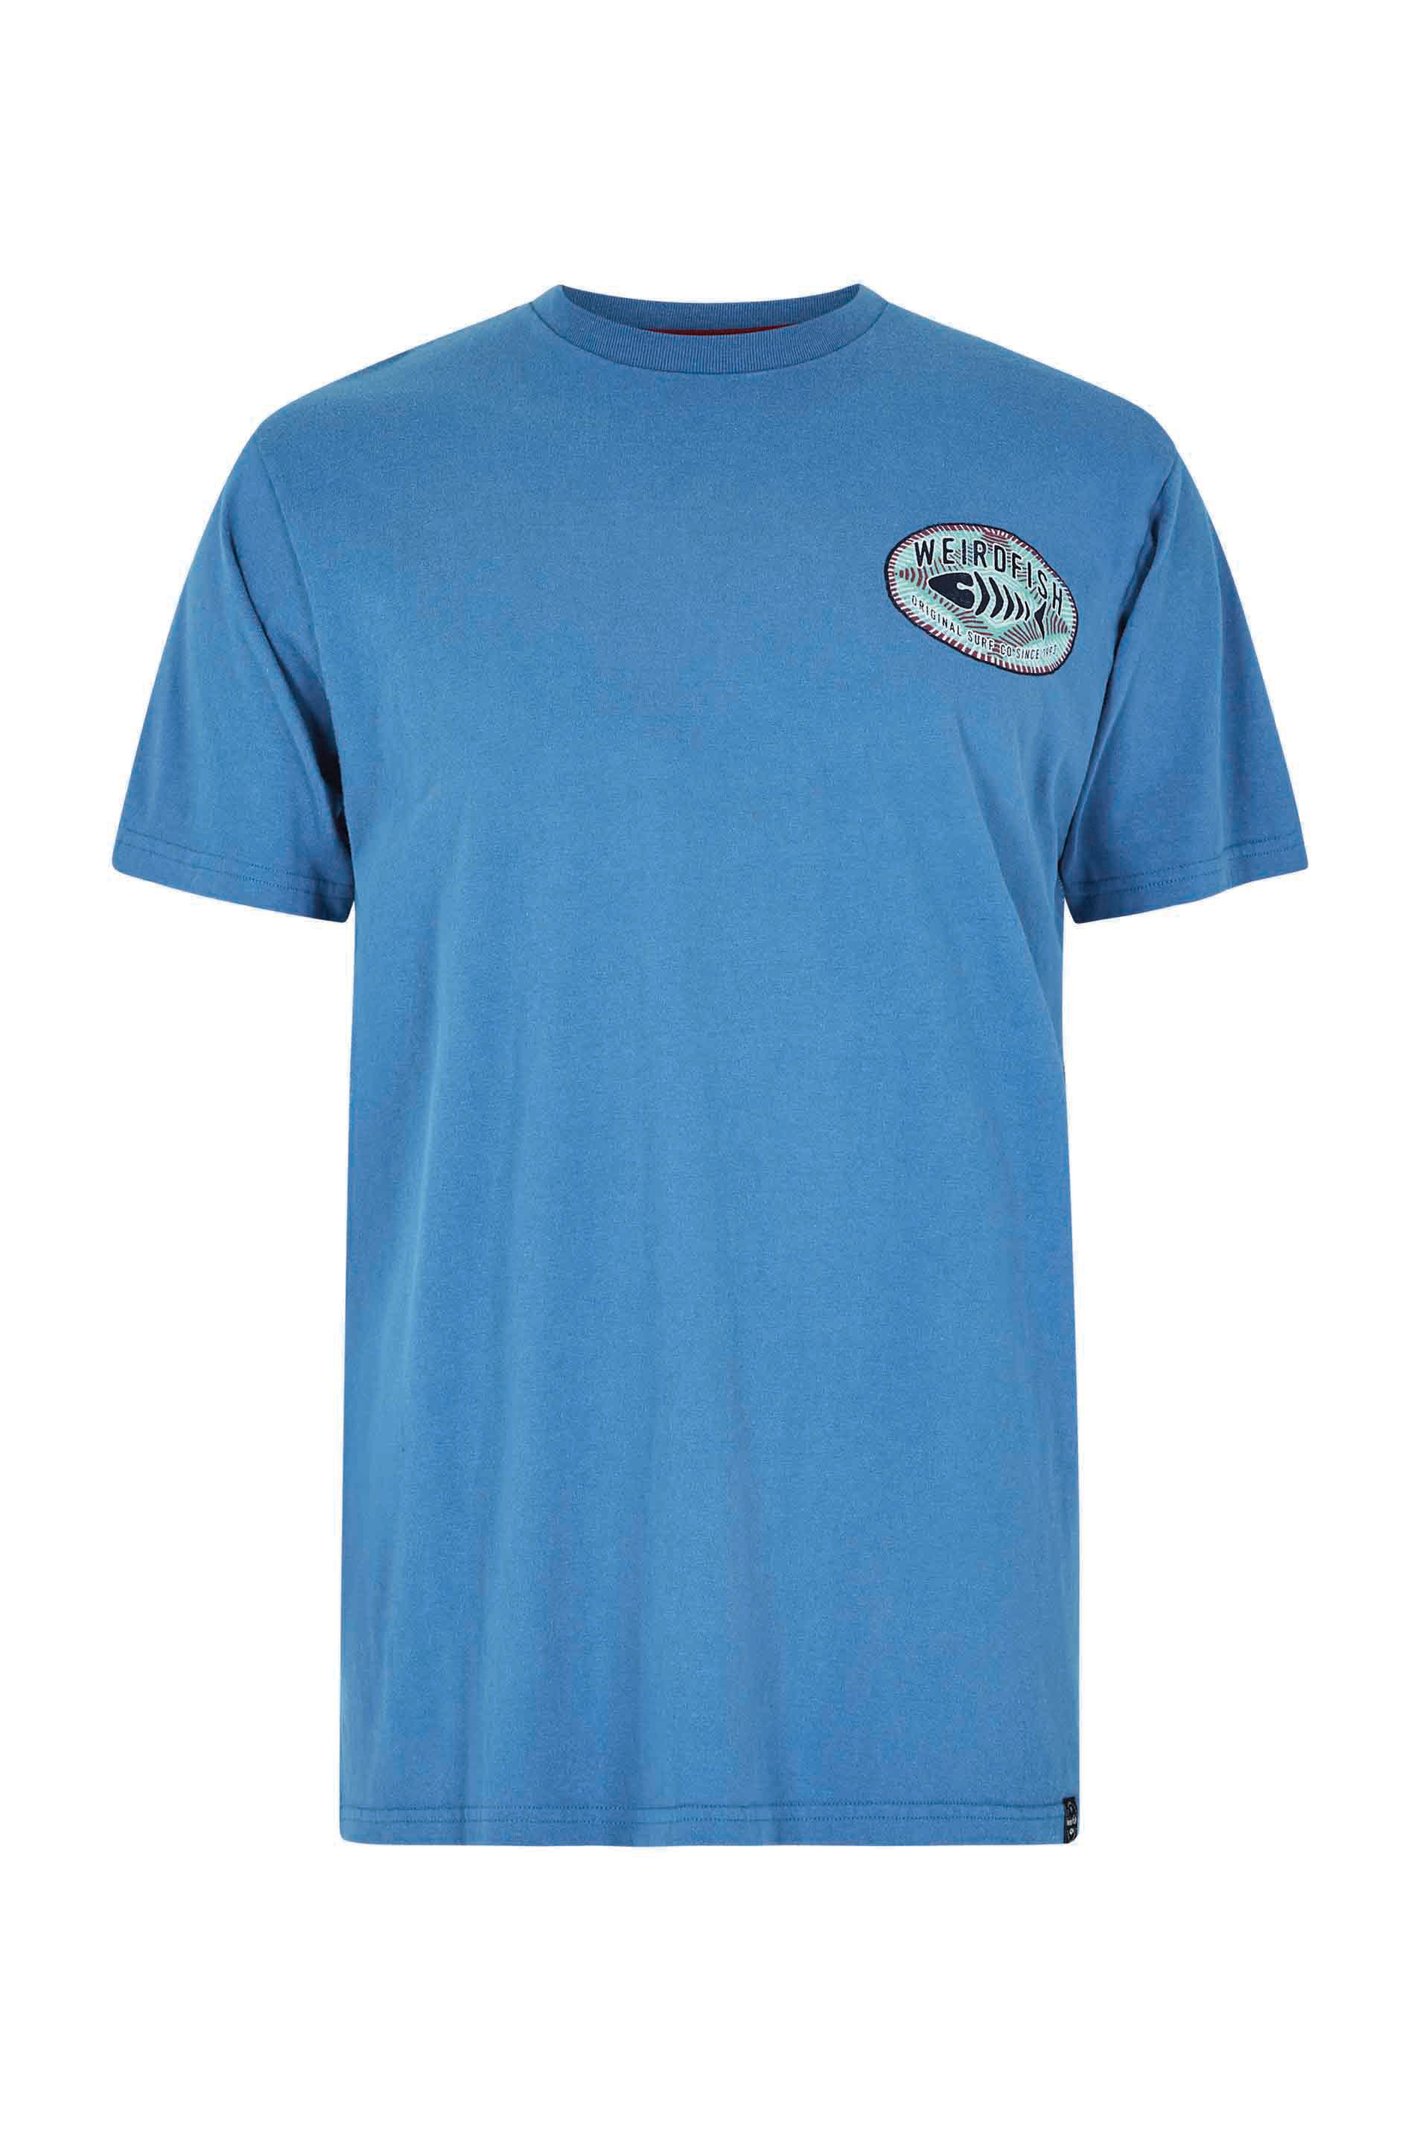 Weird Fish Original Surf Graphic T-Shirt Blue Sapphire Size S